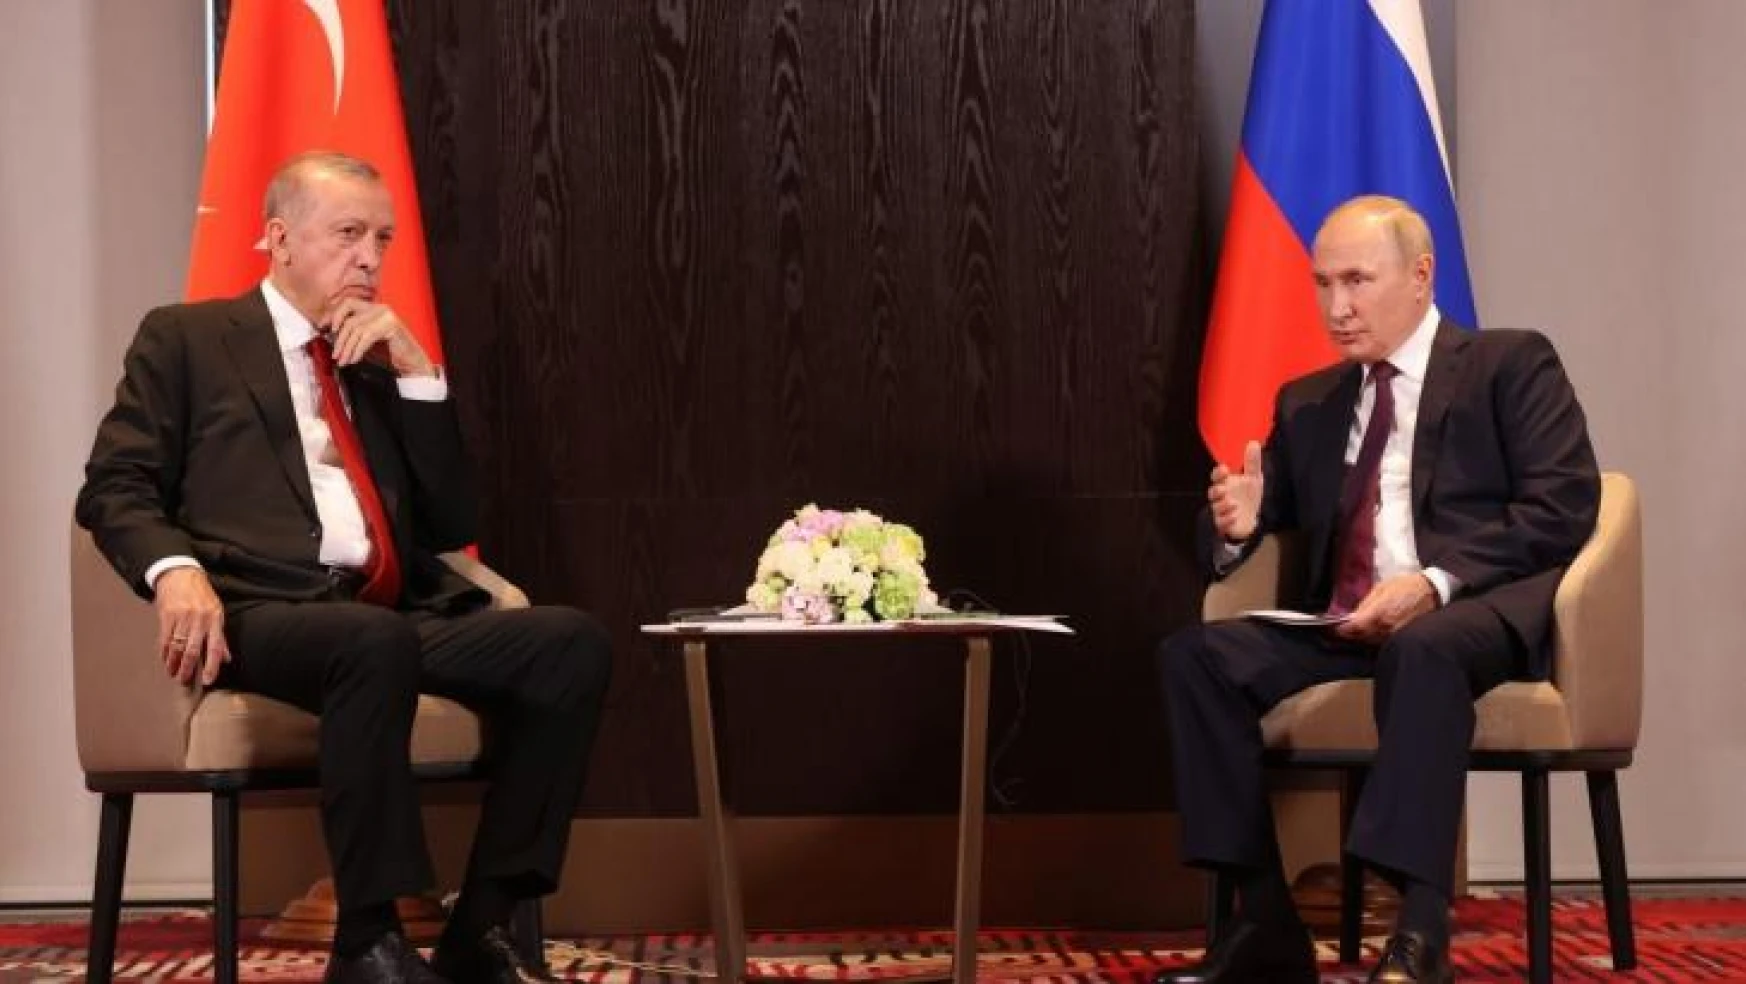 Özbekistan'ın Semerkant kentinde Cumhurbaşkanı Recep Tayyip Erdoğan ile Rusya Devlet Başkanı Vladimir Putin arasındaki görüşme başladı.